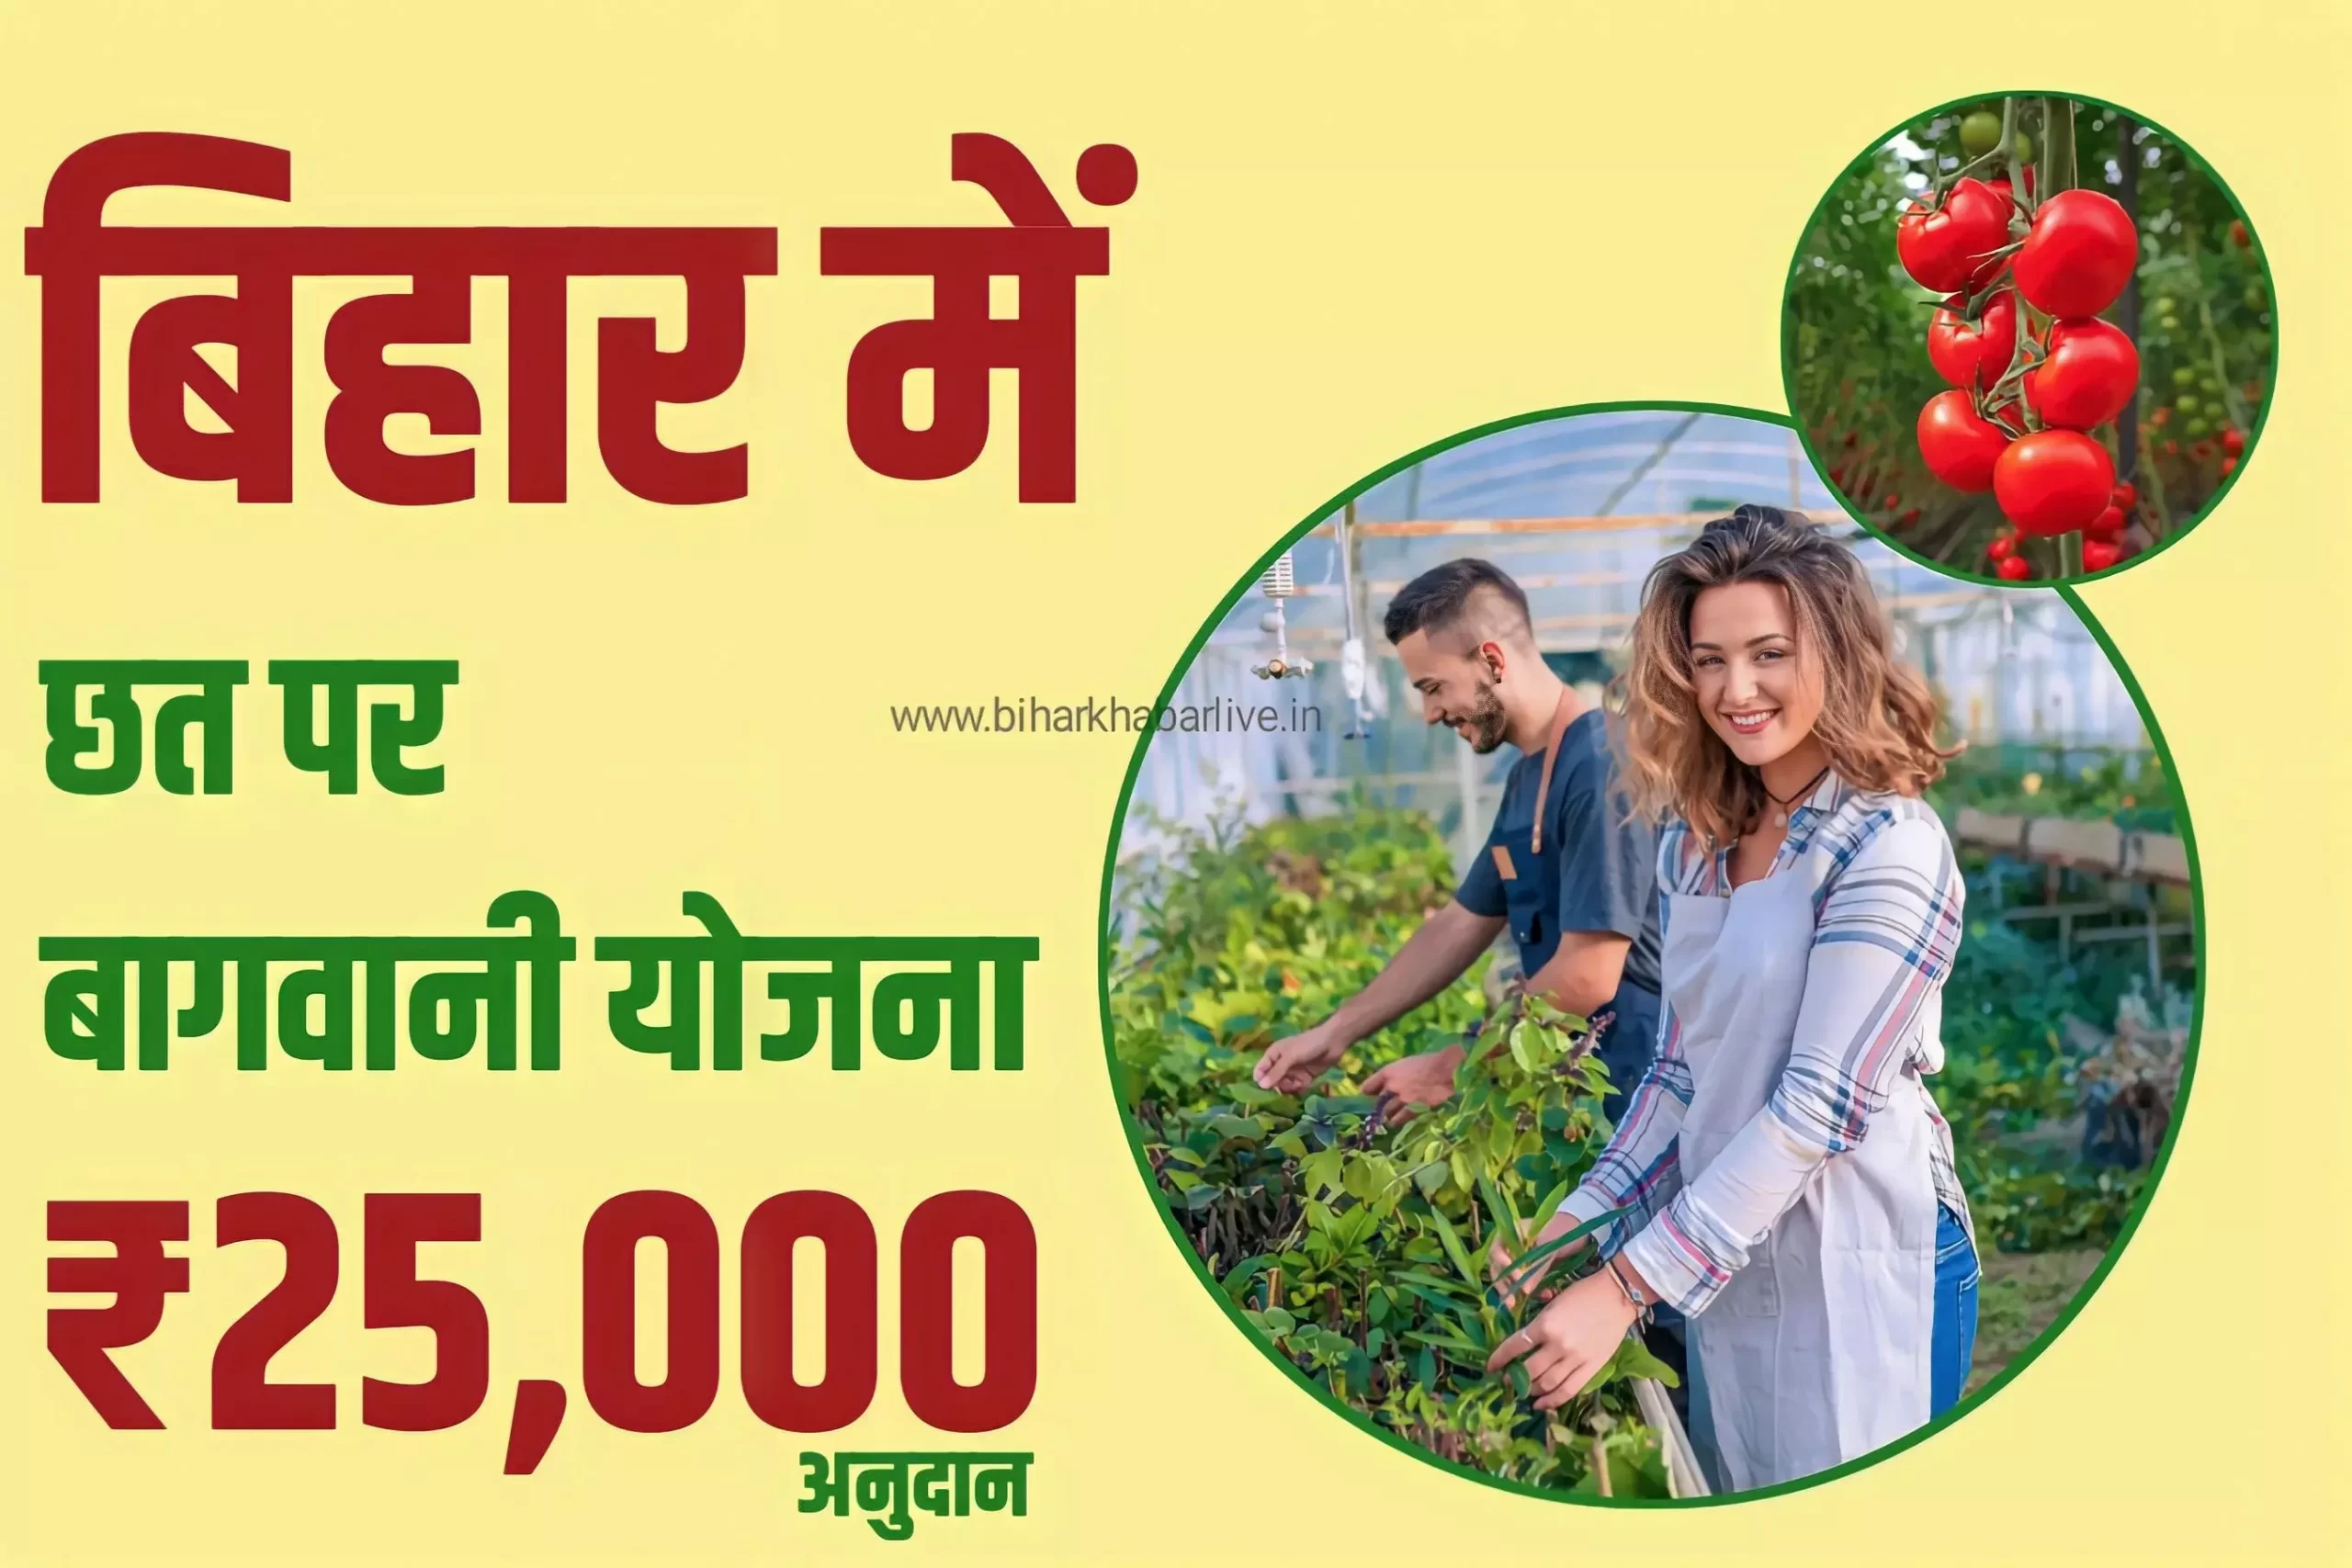 Bihar Rooftop Gardening